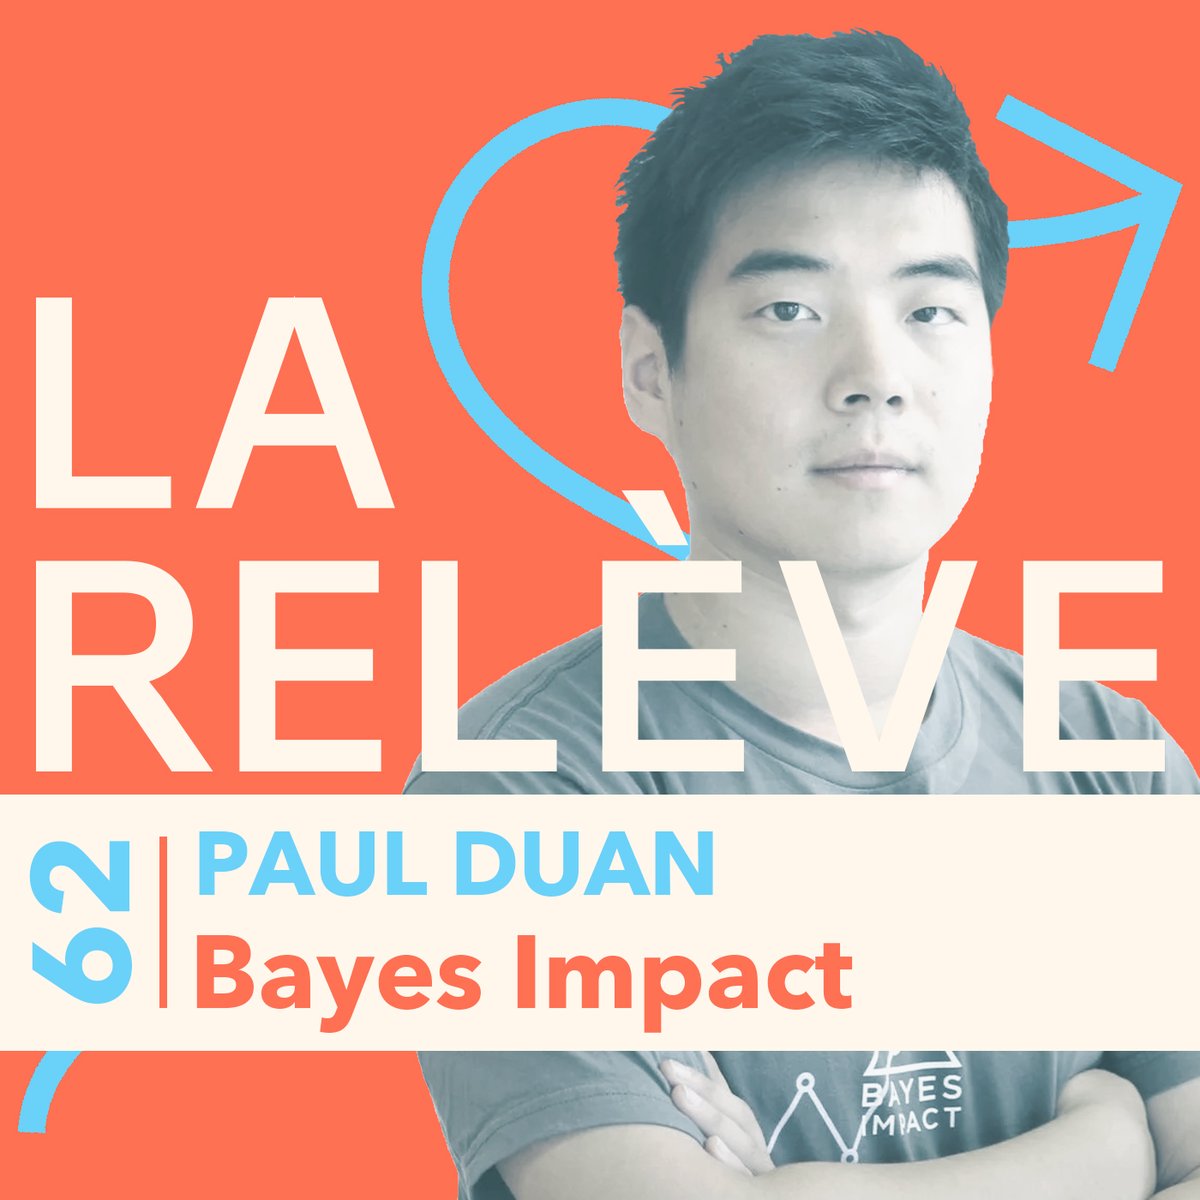 🎧 Pour le nouvel épisode du #podcast La Relève, @thiblam reçoit @pyduan, fondateur de @bayesimpact. Pour écouter l'épisode : audmns.com/KKajTef Bonne écoute ! #Impact #entrepreneur